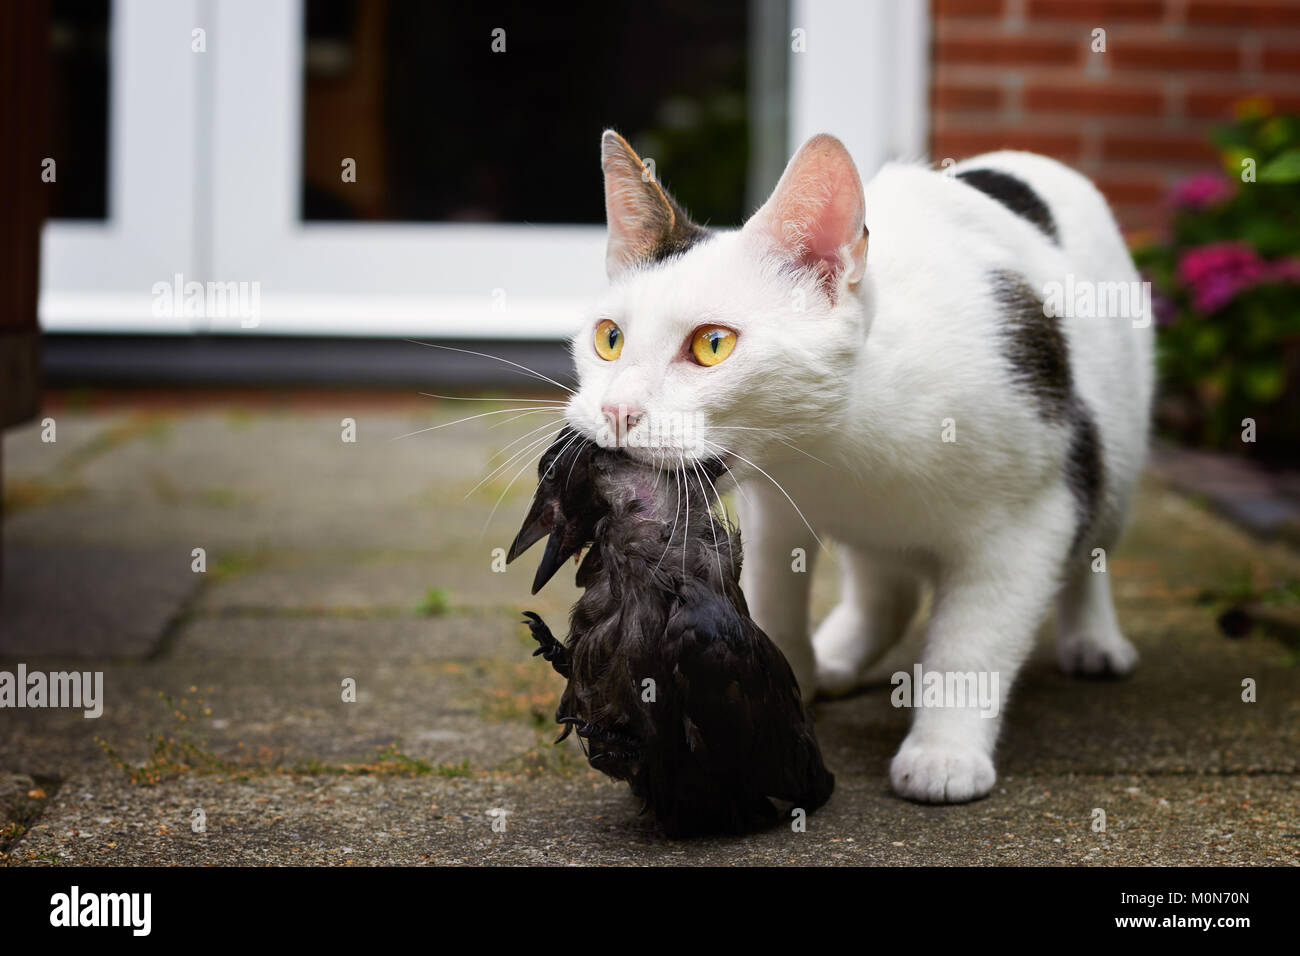 Domestic cat kills bird Stock Photo